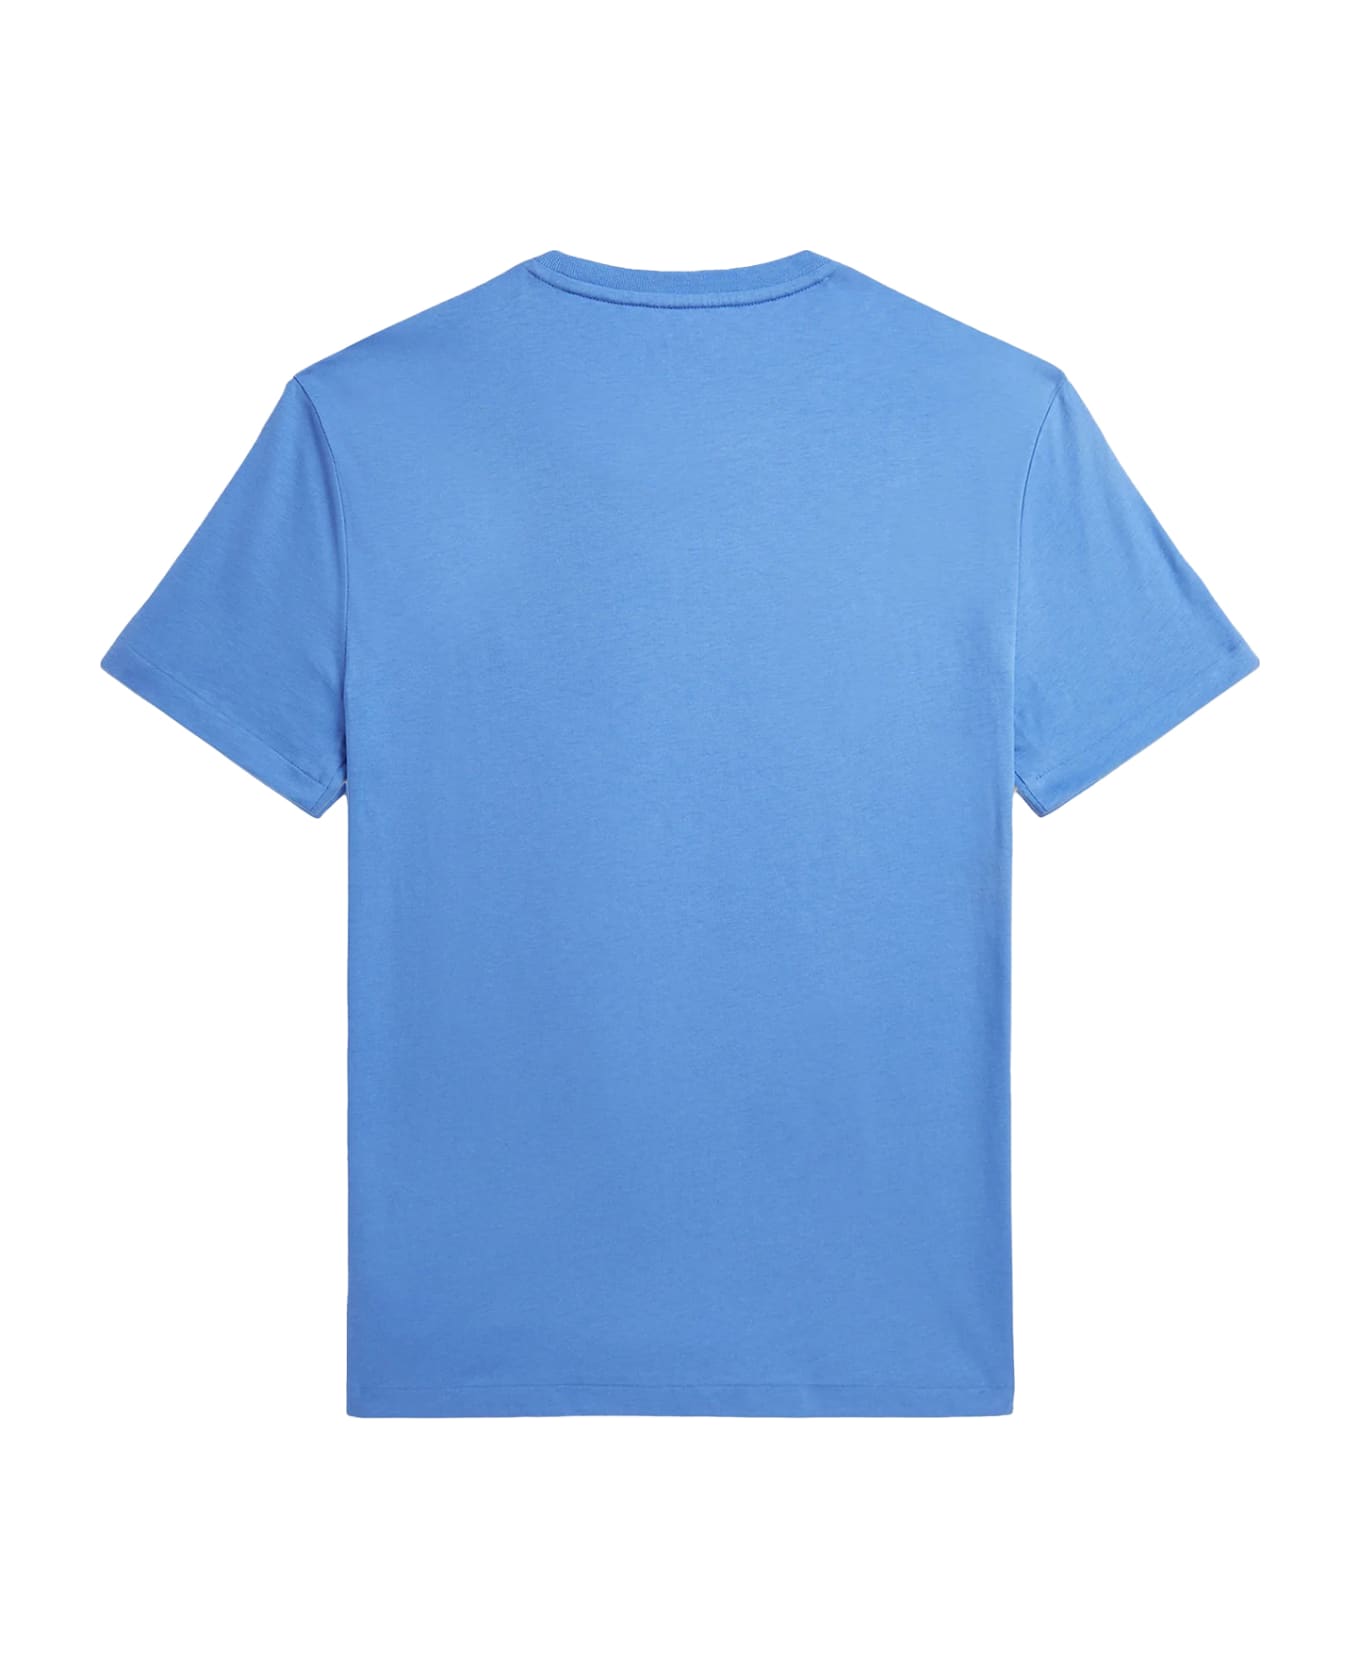 Polo Ralph Lauren T-Shirt - NEW ENGLAND BLUE